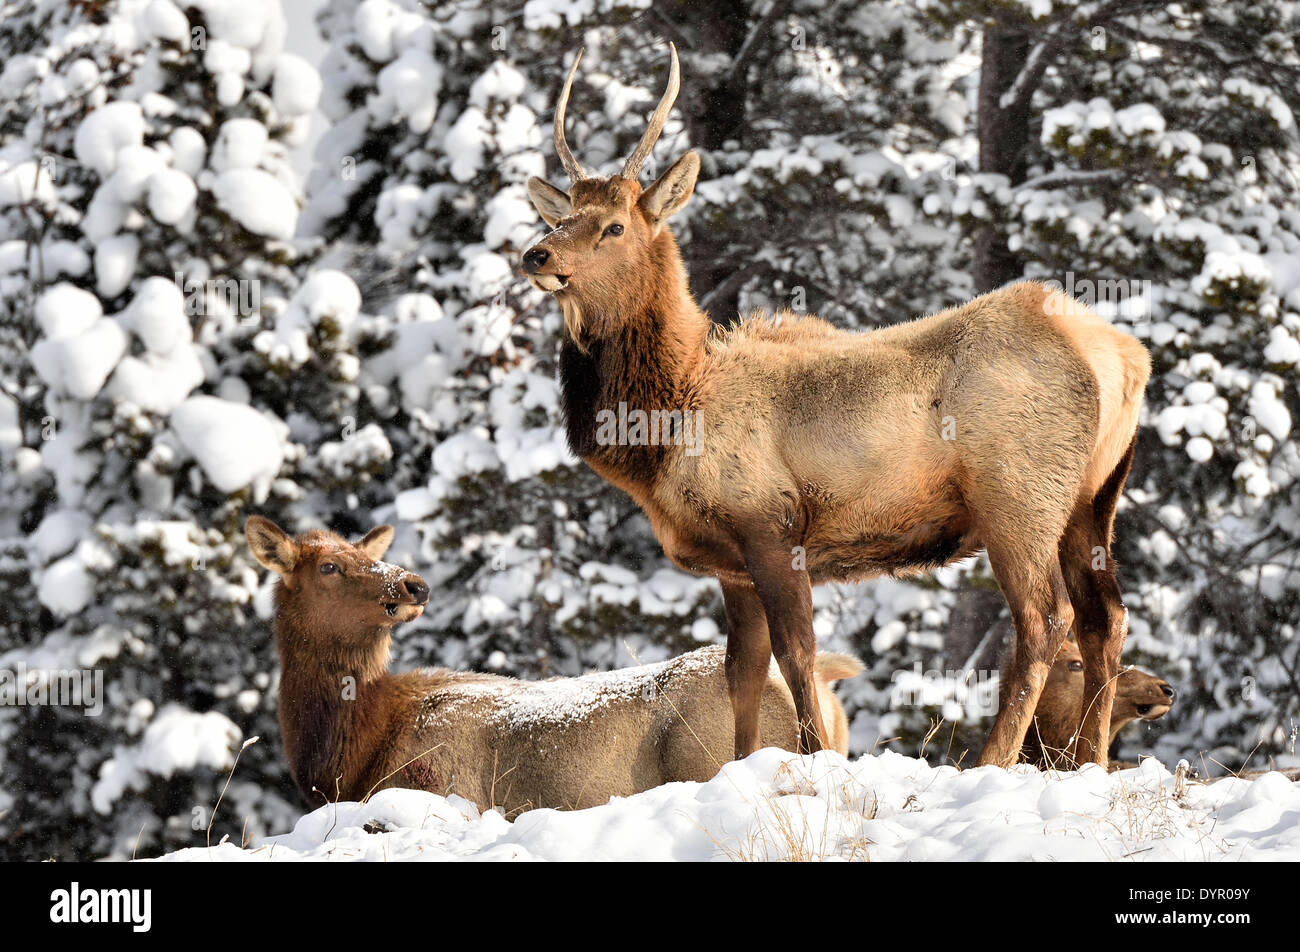 Un toro joven elk estar alerta permanente como su rebaño se mueve a lo largo de un sendero cubierto de nieve Foto de stock